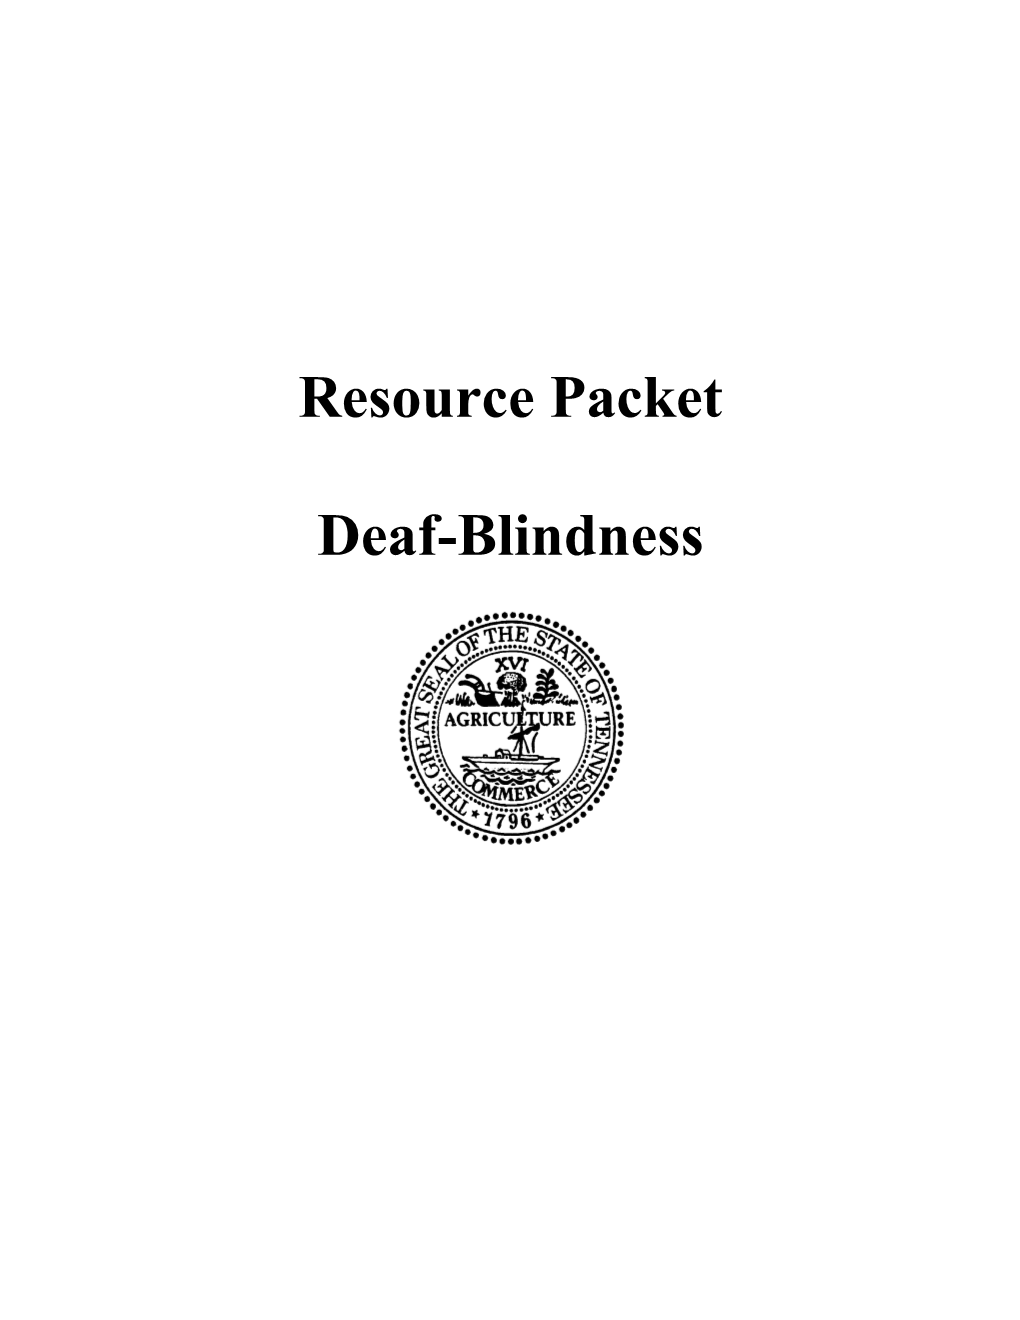 Deaf-Blind Guidelines